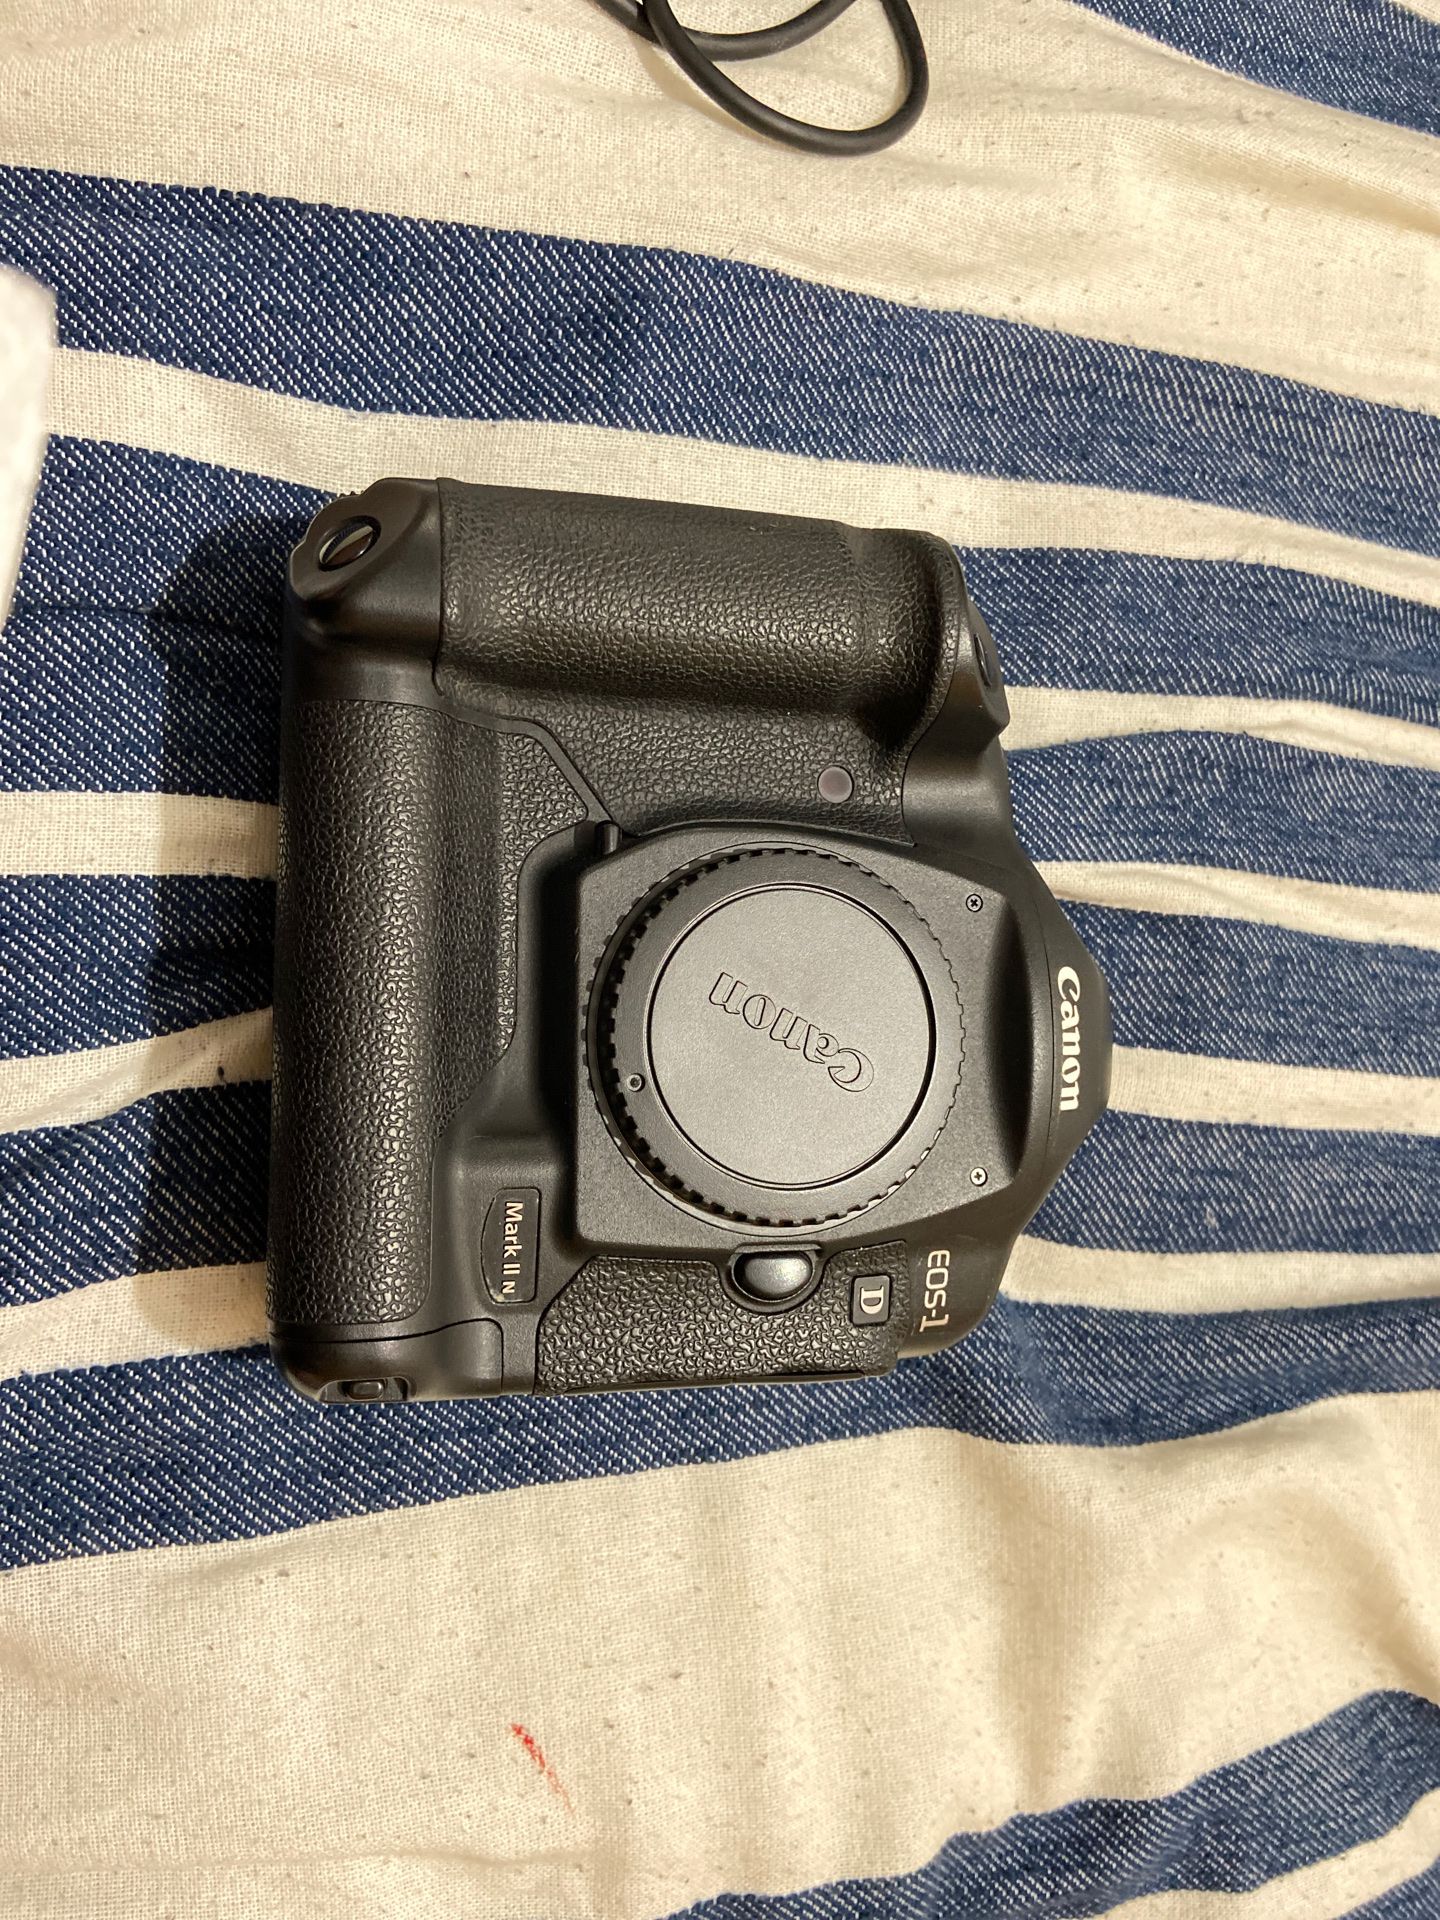 Canon EOS-1 D Mark 2 N Digital